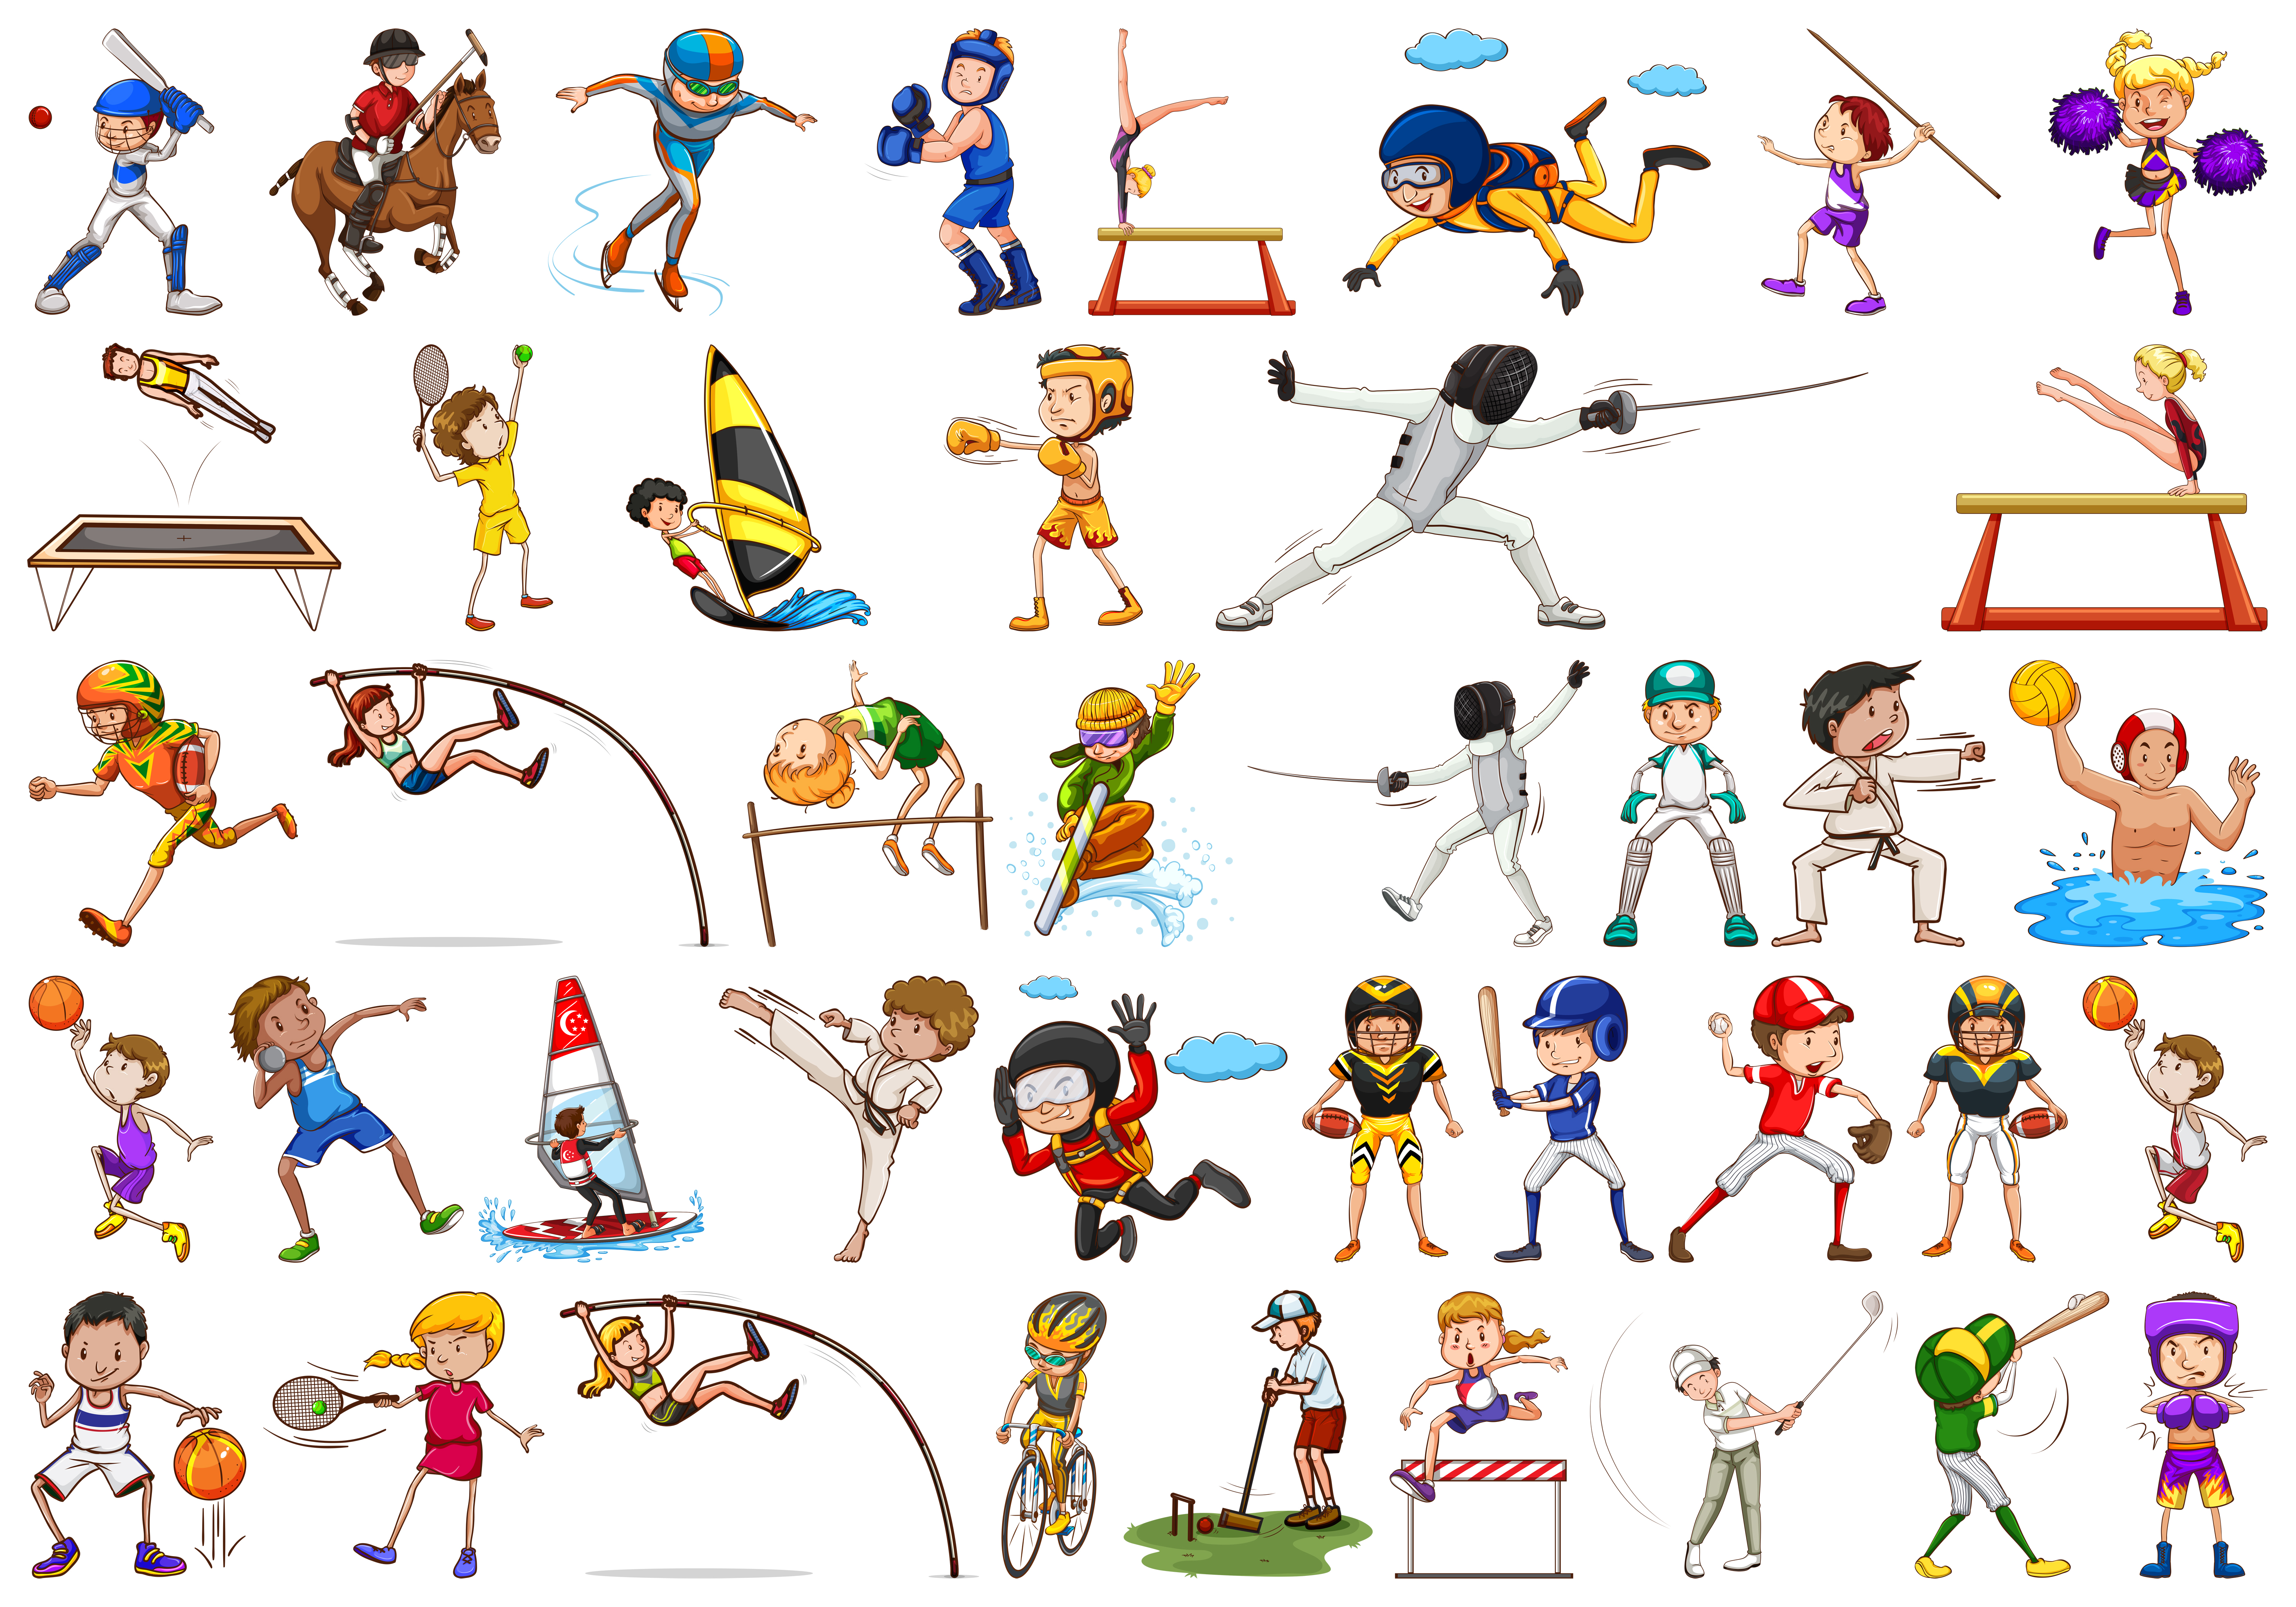 Sport contents. Виды спорта иллюстрация. Иллюстрации с разными видами спорта. Спортивные рисунки для детей. Иллюстрации виды спорта для детей.